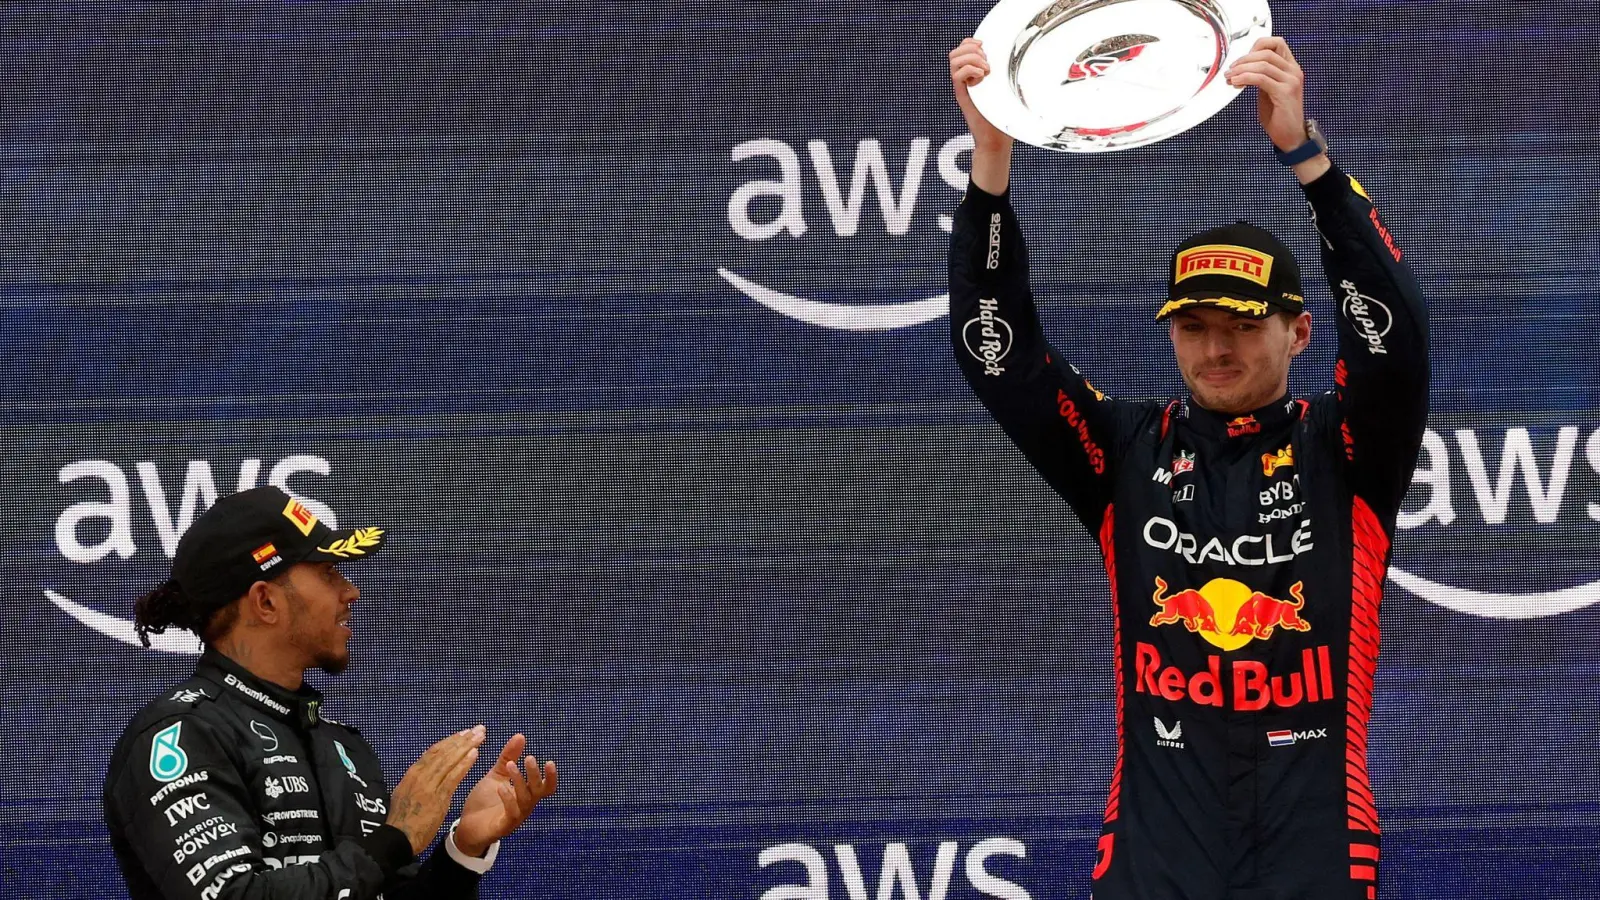 Lewis Hamilton applaudiert dem Sieger: Der Formel-1-Weltmeister Max Verstappen hat den Großen Preis von Spanien gewonnen und seine WM-Führung weiter ausgebaut. (Foto: Joan Monfort/AP)